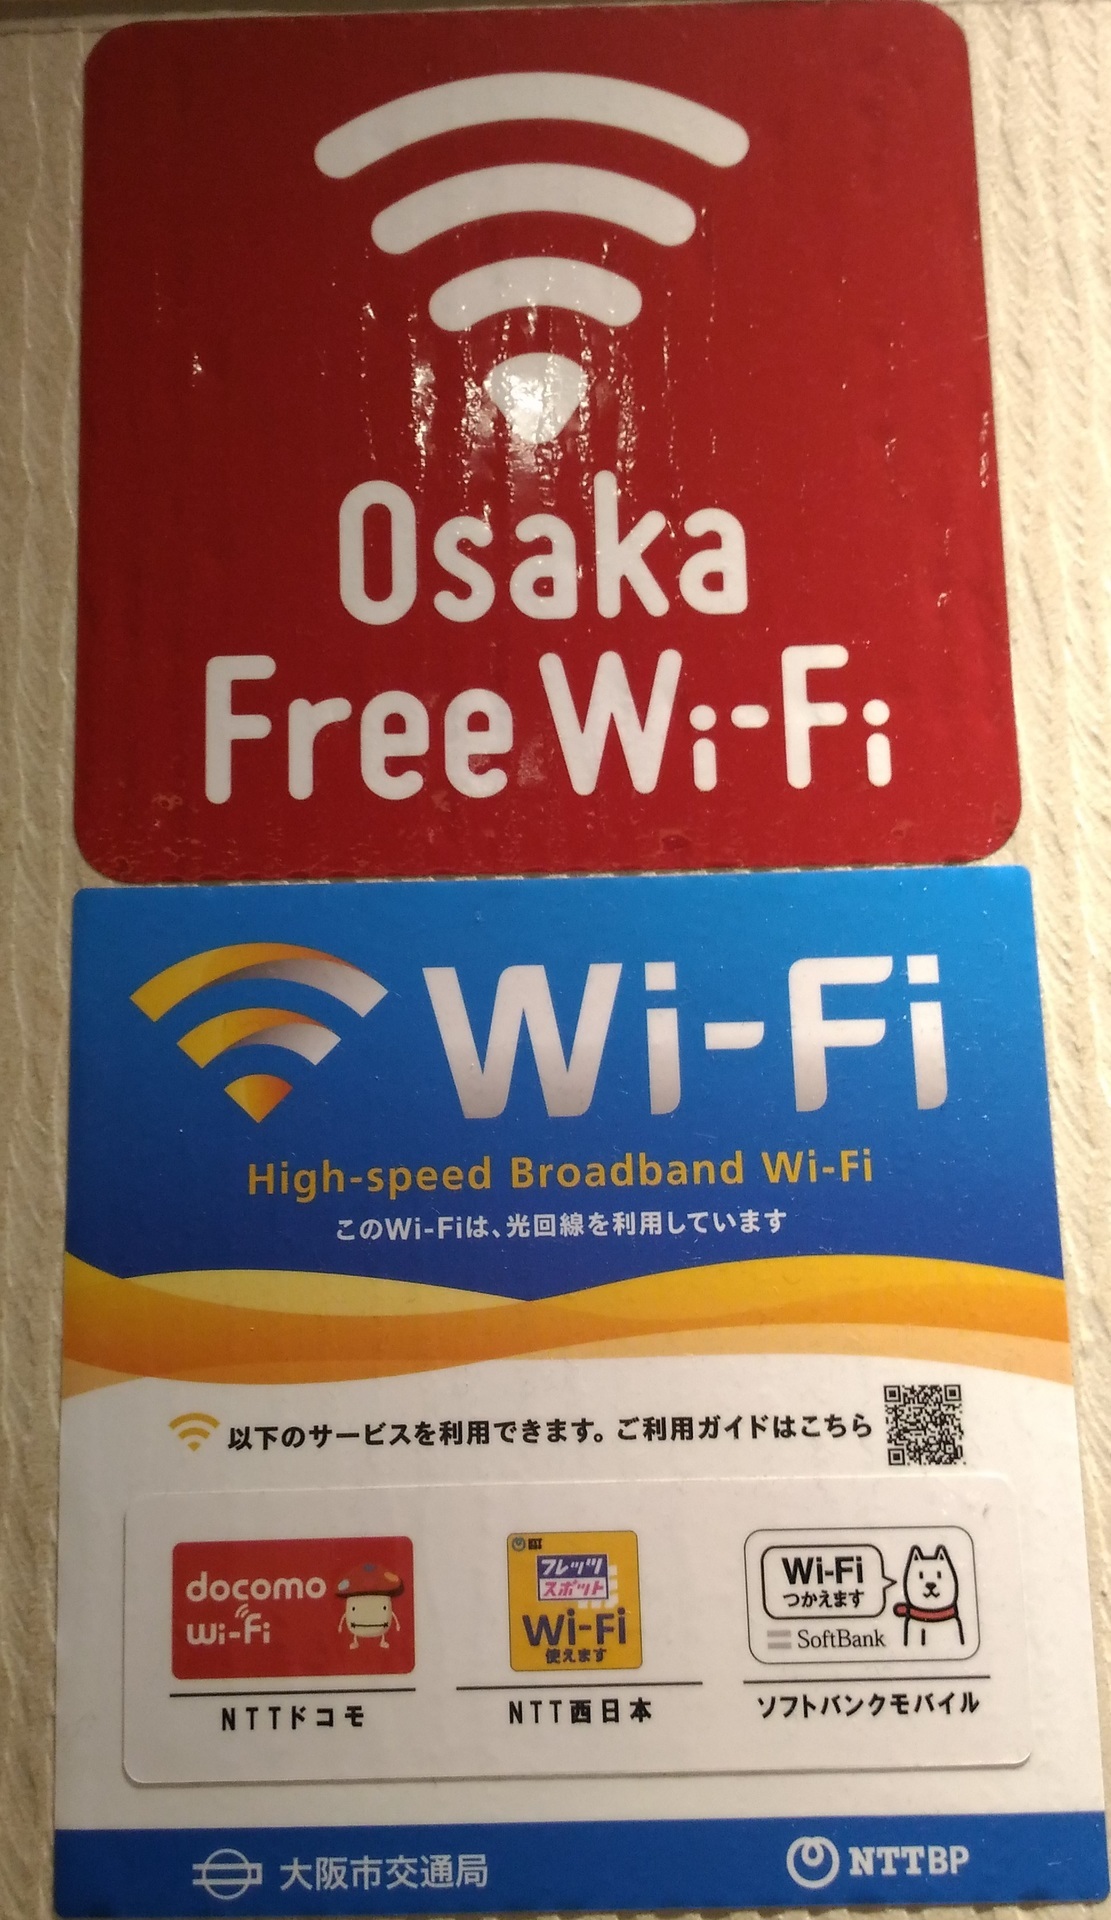 大阪梅田無料wifiは 映画館の梅田ブルク7のe Ma イーマ ビル 大阪市北区中津 賃貸マンションで一人暮らし始めてみました